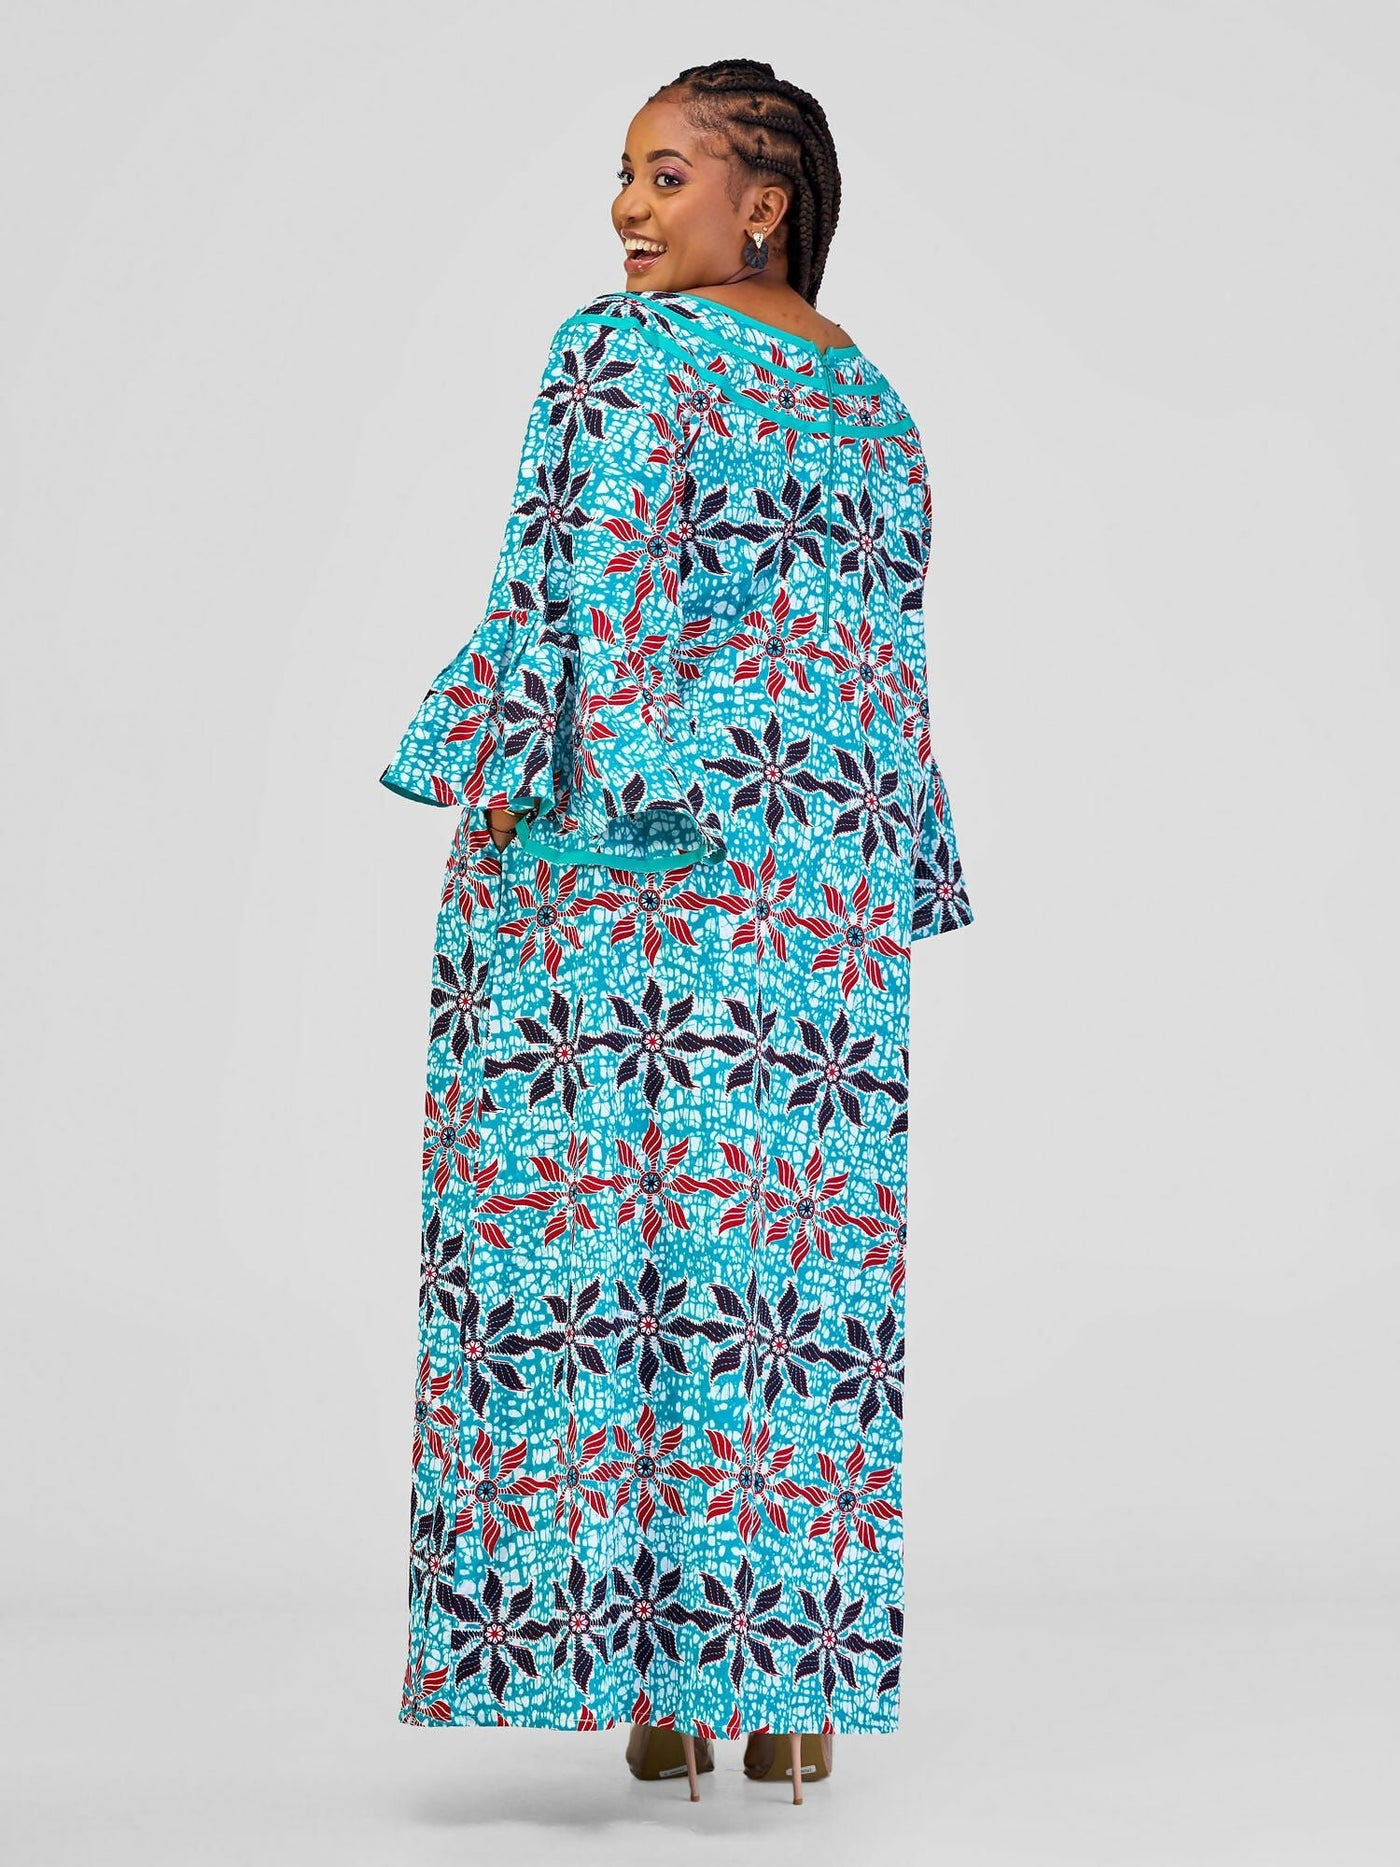 Afafla Ankara Lady Dress - Turquoise - Shopzetu